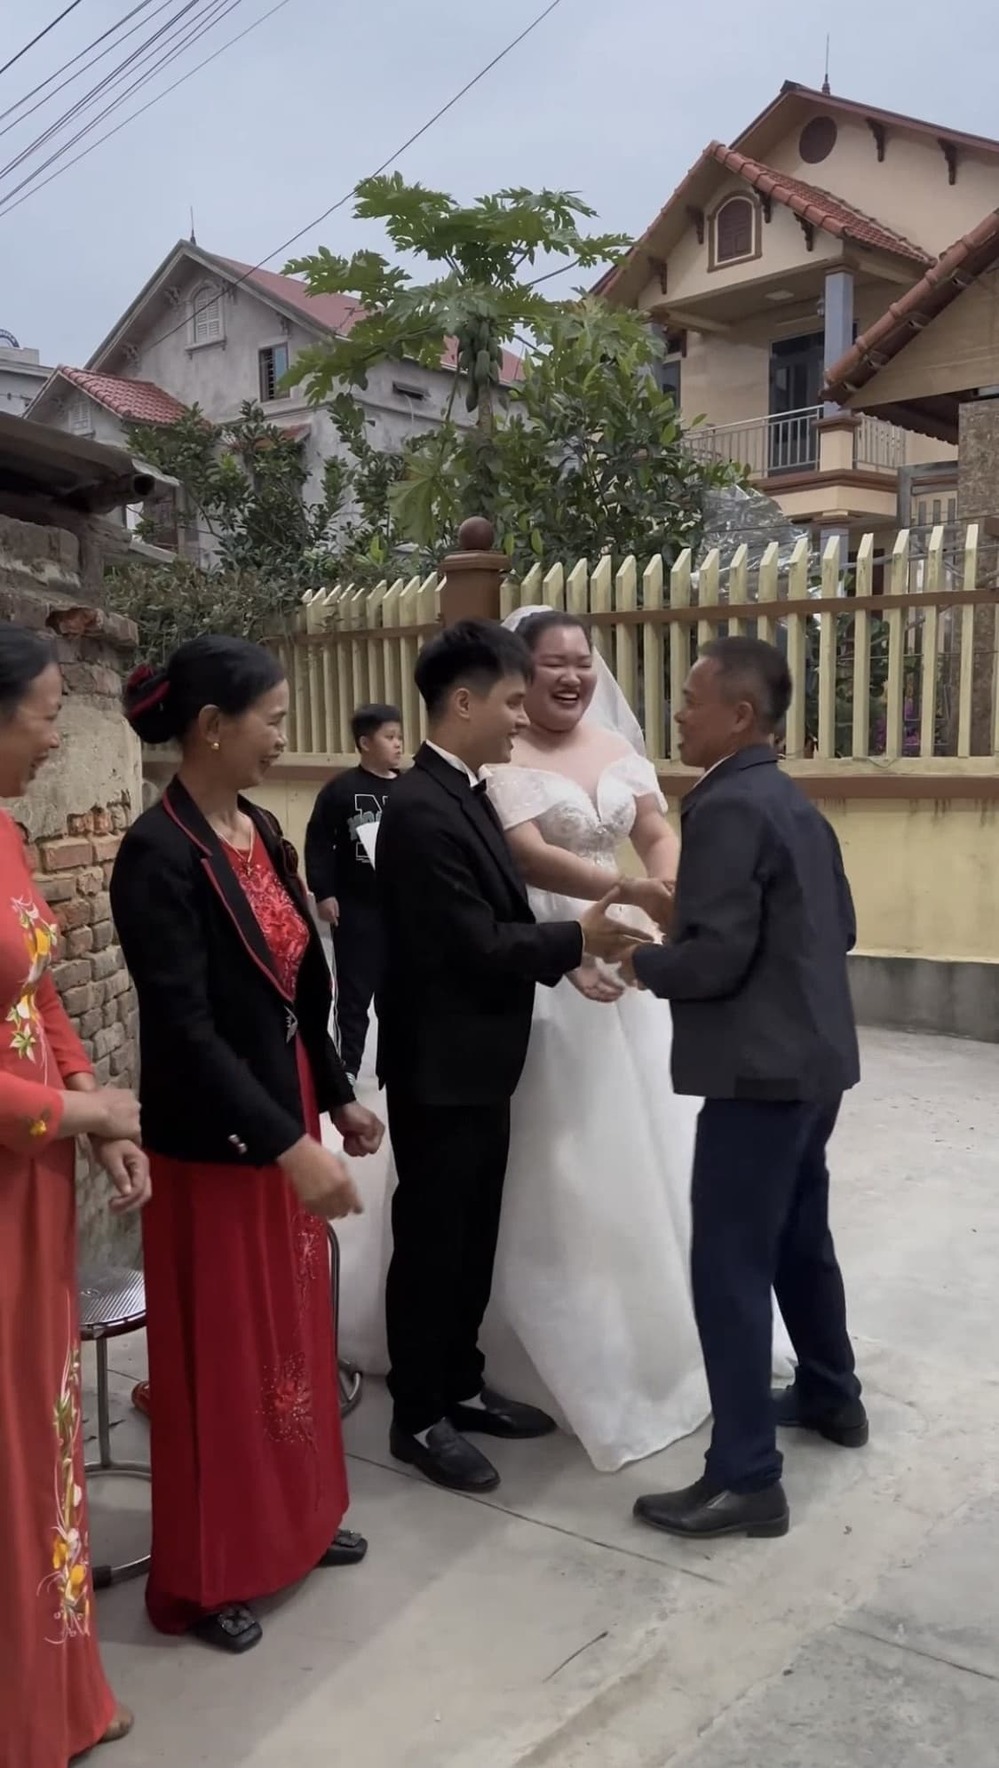  
Cô dâu Kim Liên còn không hề đeo vòng hay nhẫn vàng - một trong những thứ gần như không thể thiếu ở lễ cưới. (Ảnh: Chụp màn hình TikTok Hải Vót)